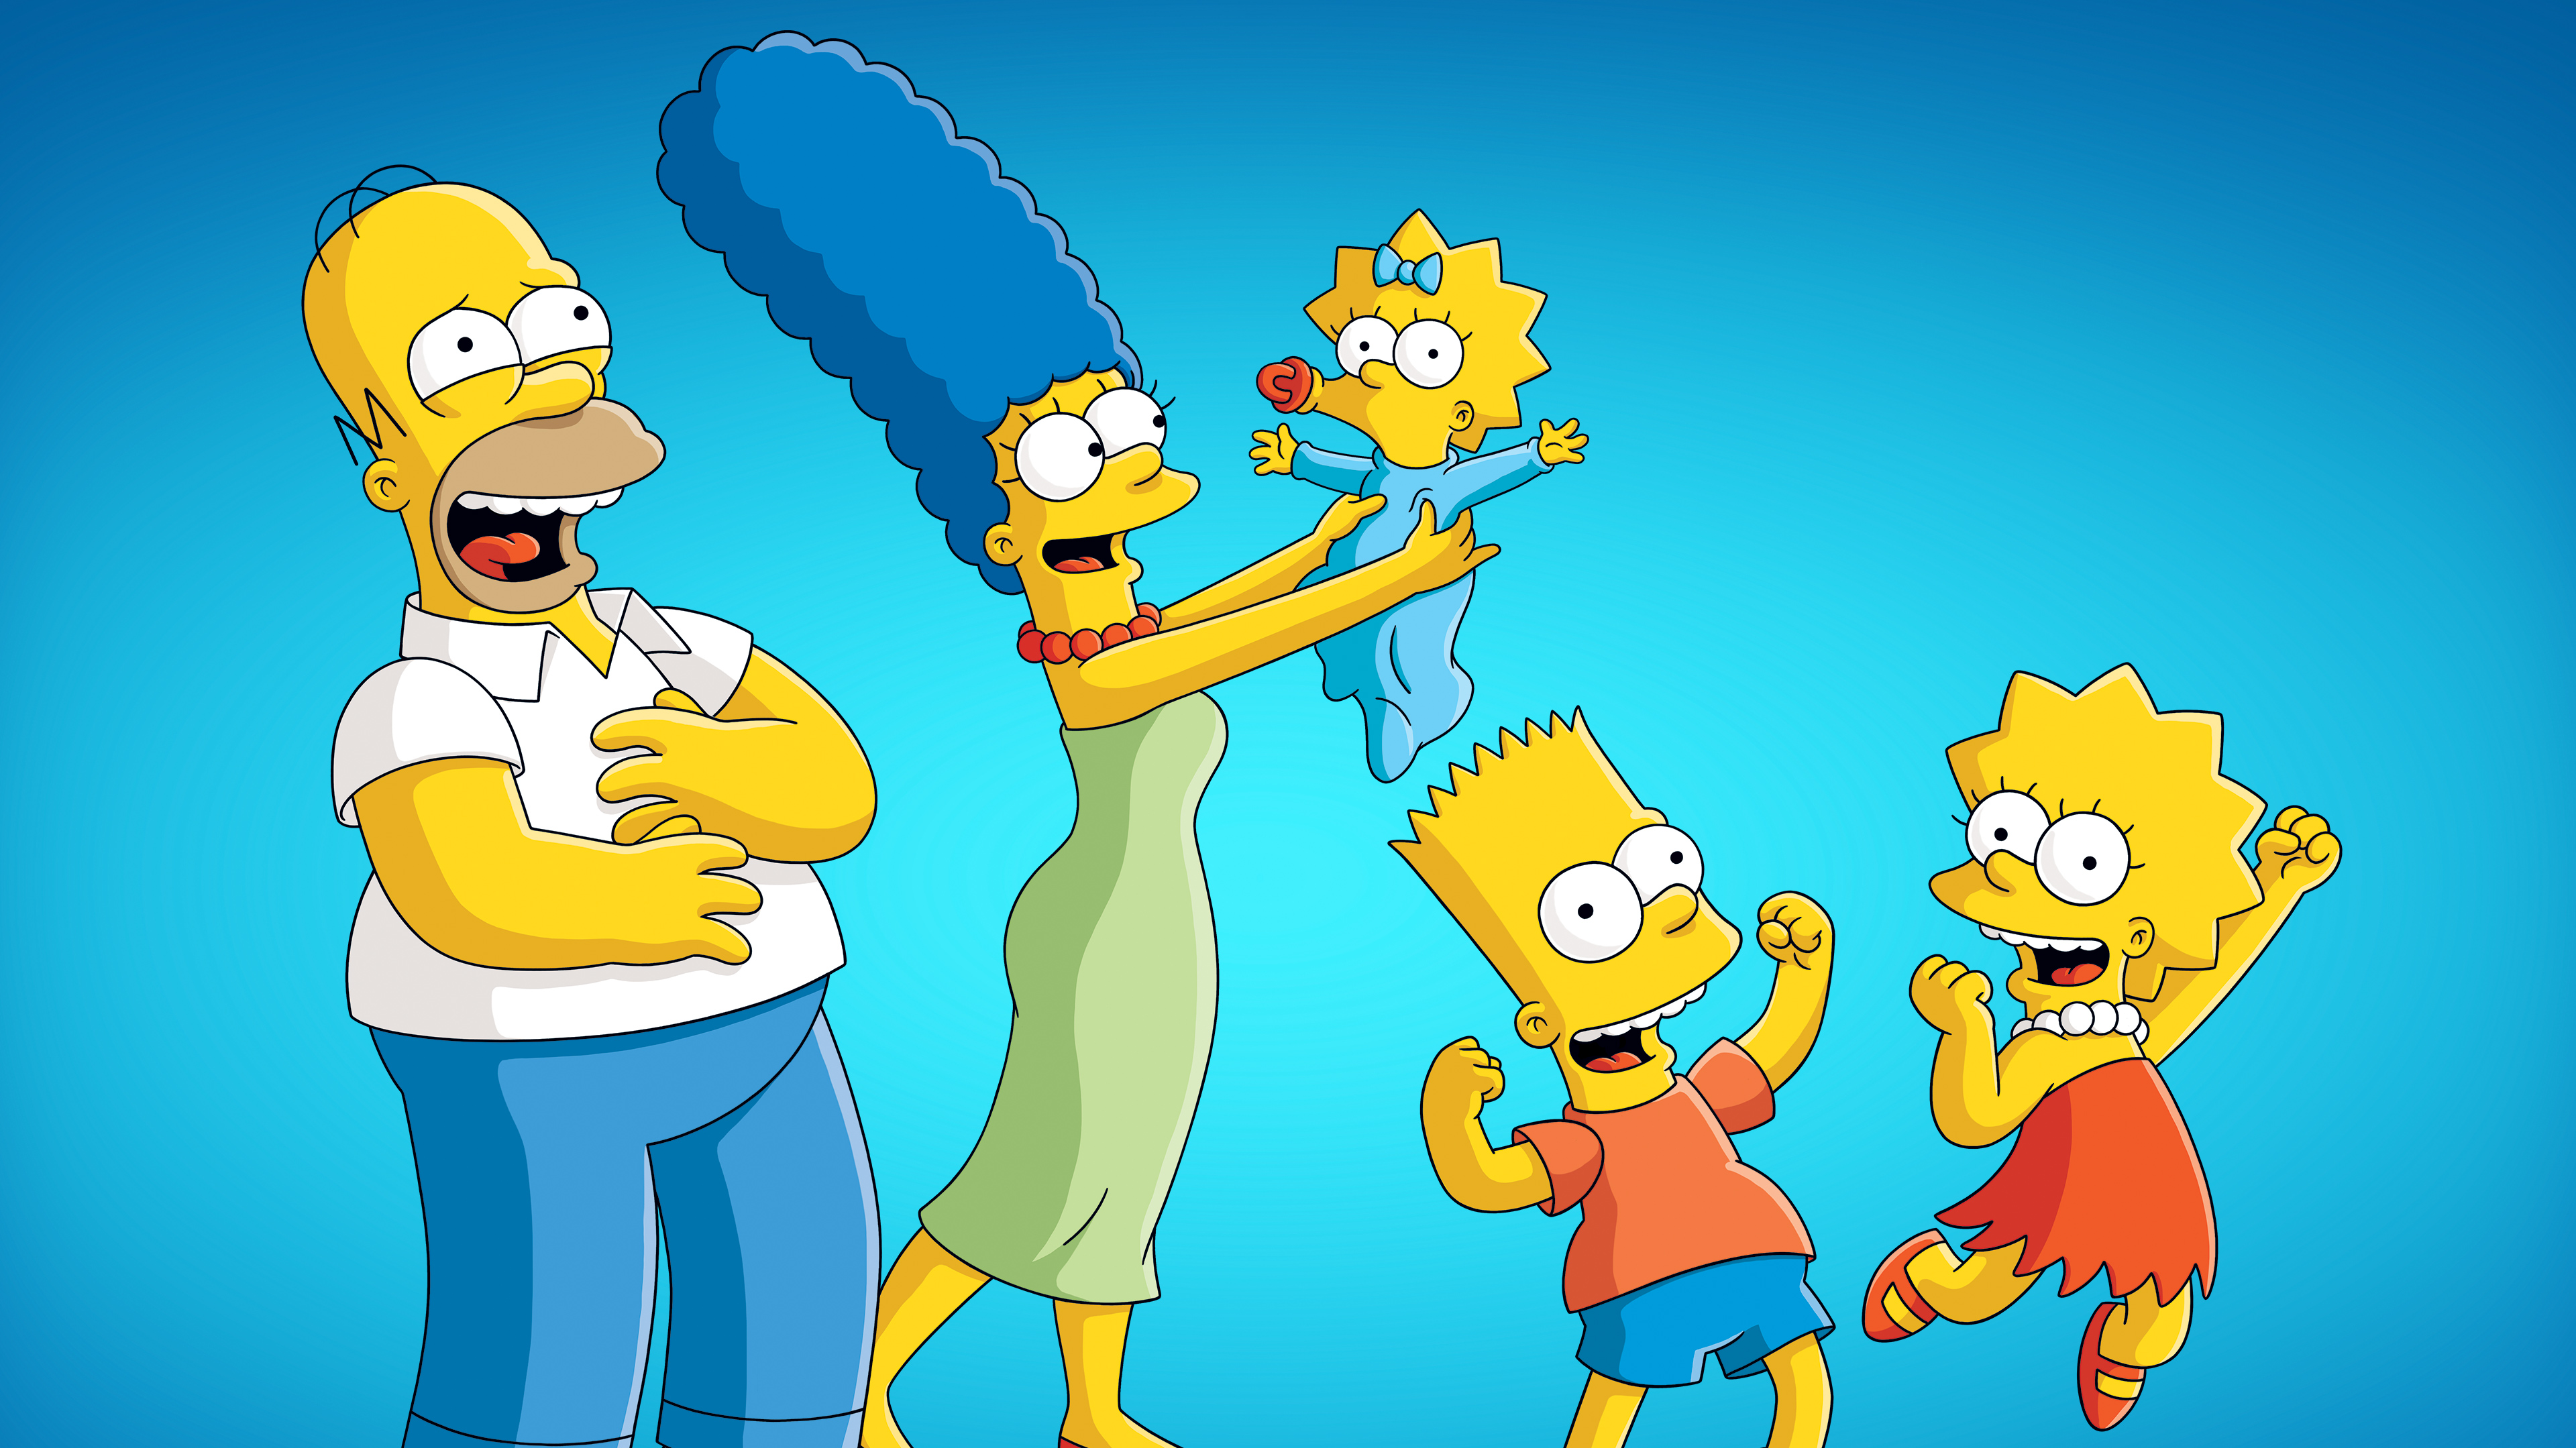 ¡Todo el mundo atento! Mañana se celebra el Día Internacional de Los Simpsons